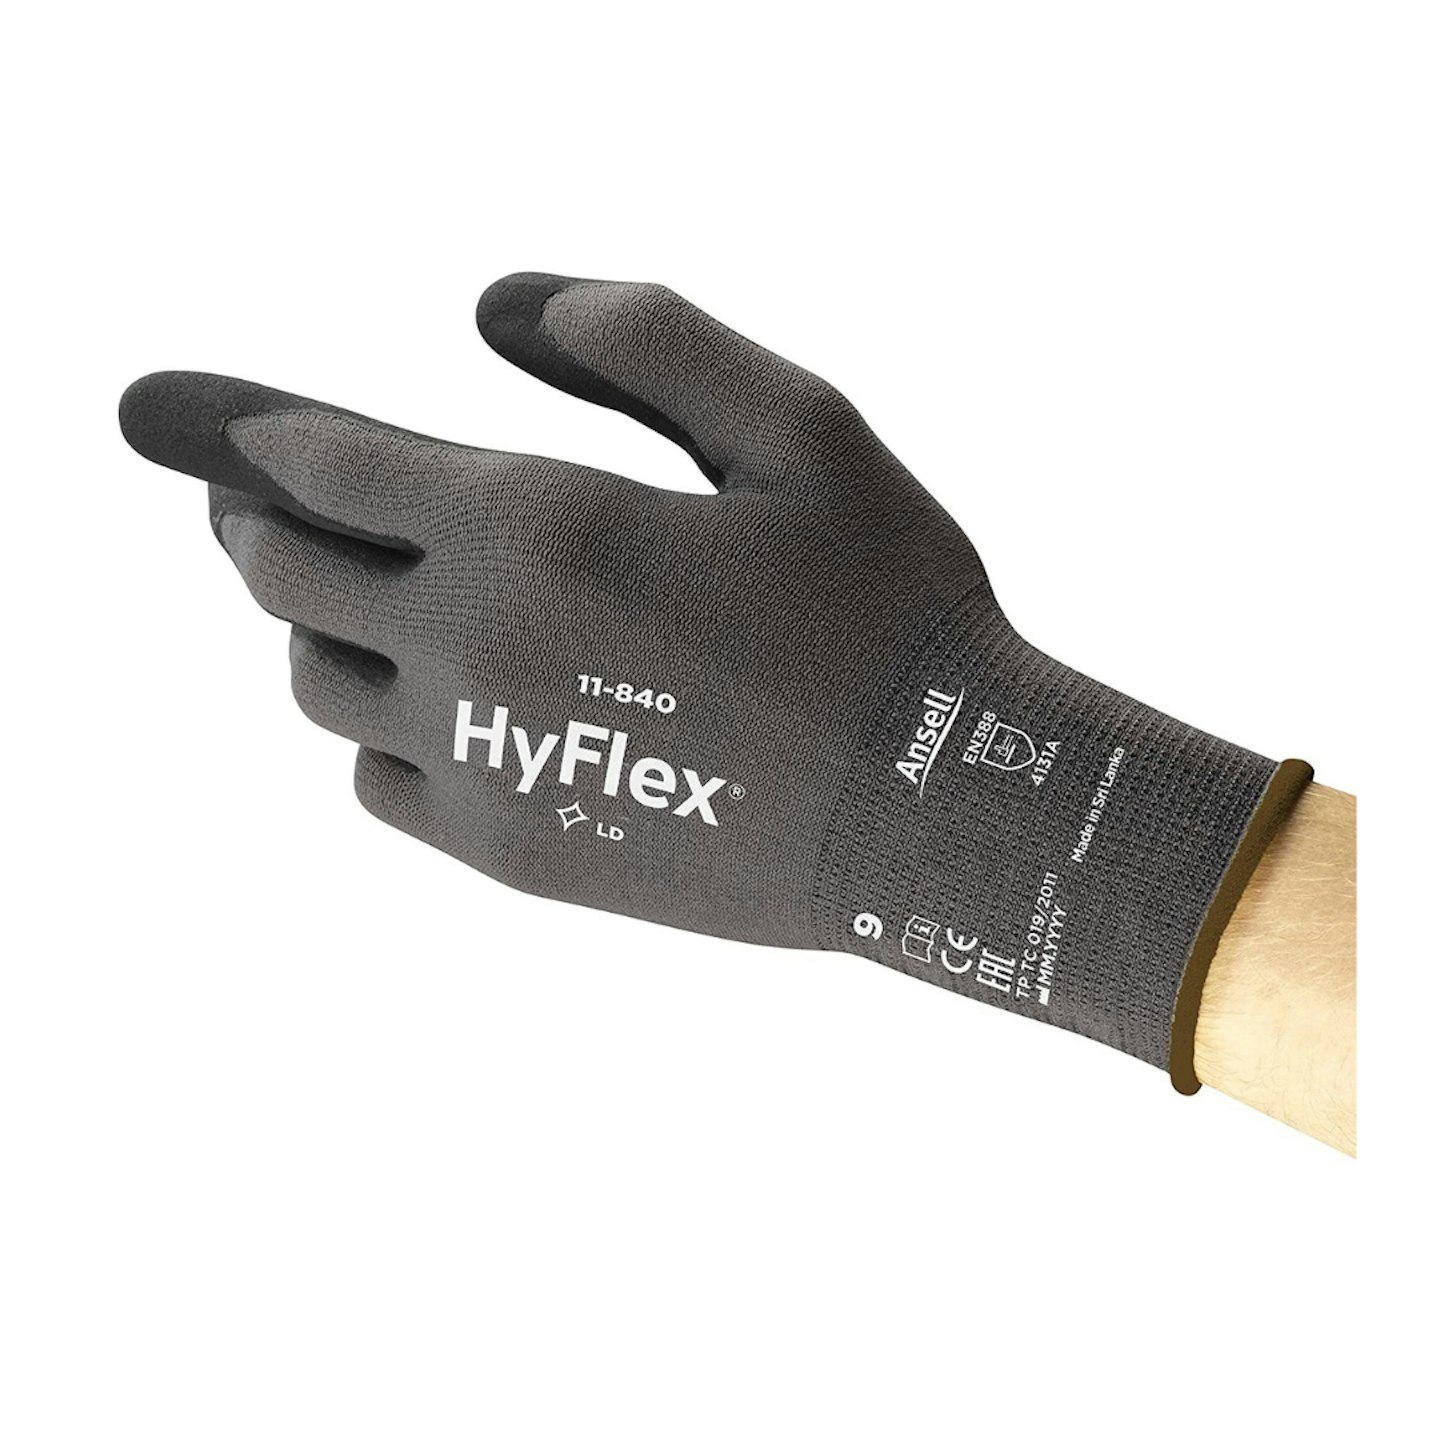 Ansell HyFlex 11-840 Work Gloves